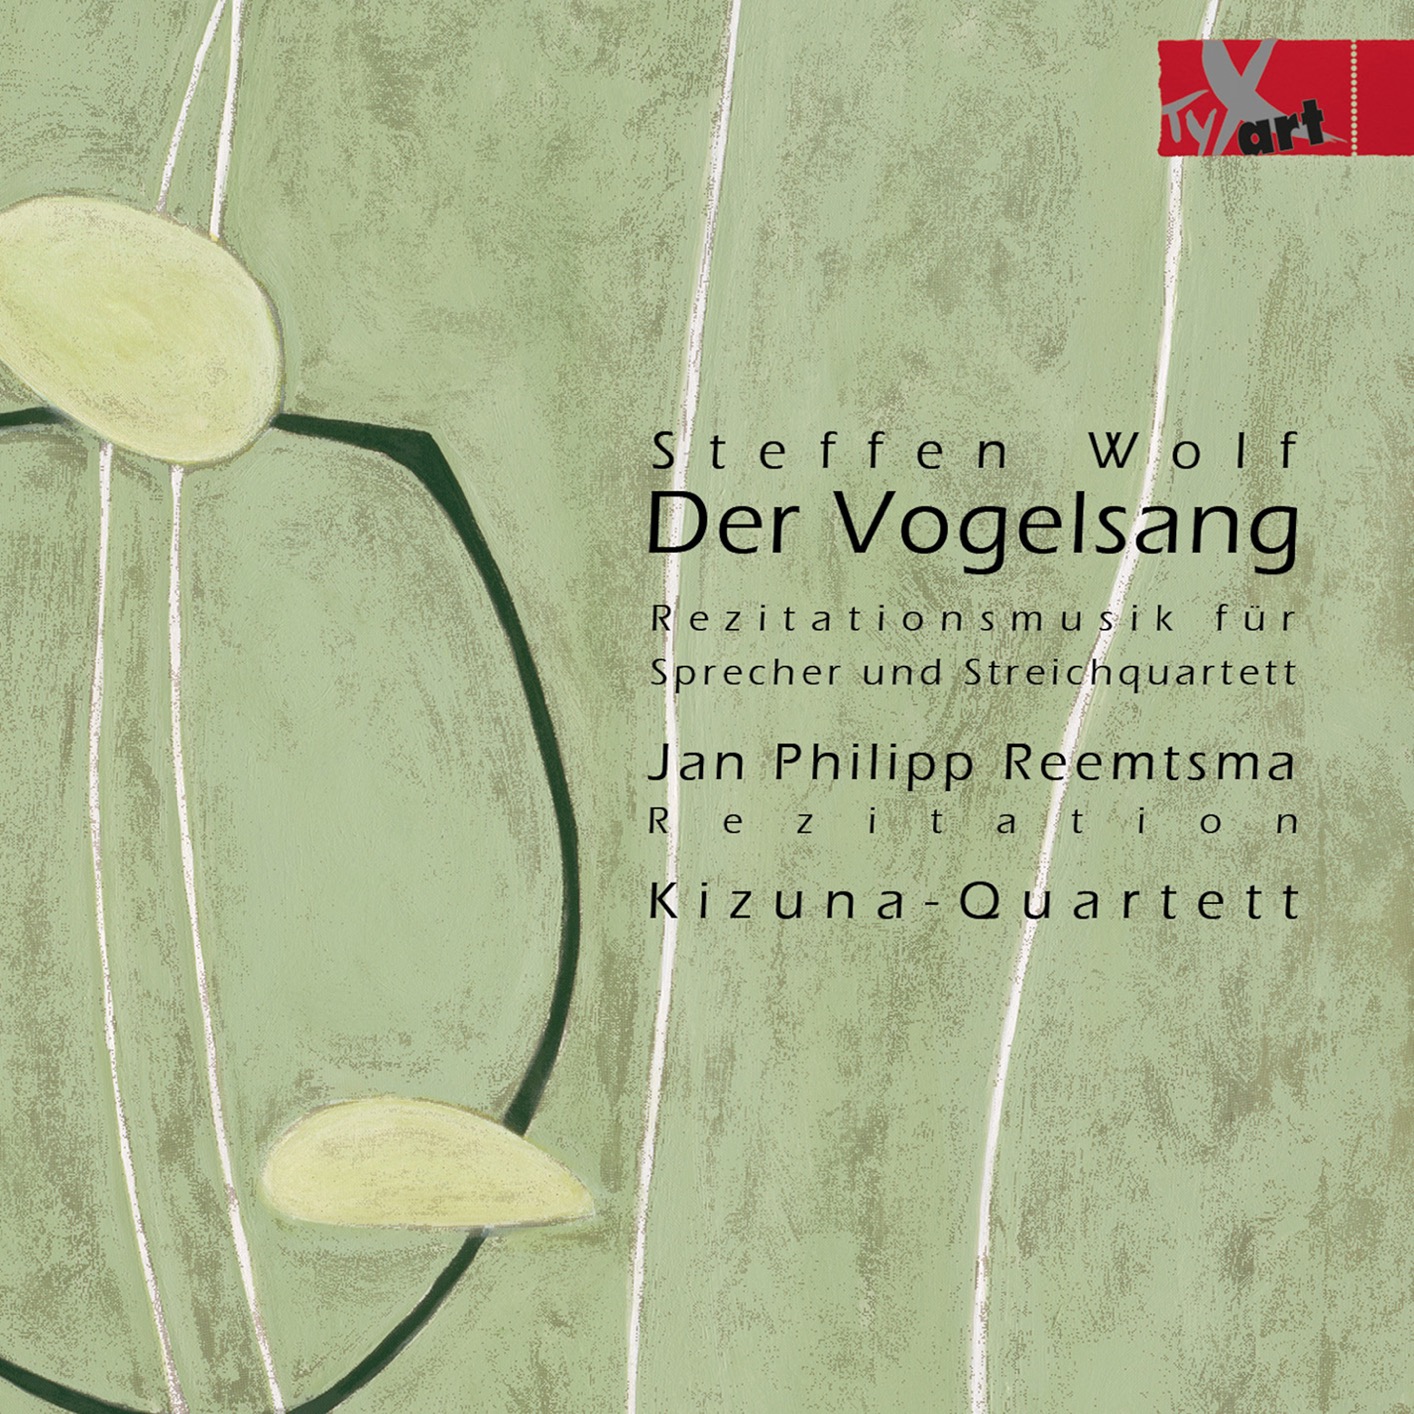 Jan Philipp Reemtsma & Kizuna-Quartett – Steffen Wolf: Der Vogelsang (2021) [FLAC 24bit/48kHz]